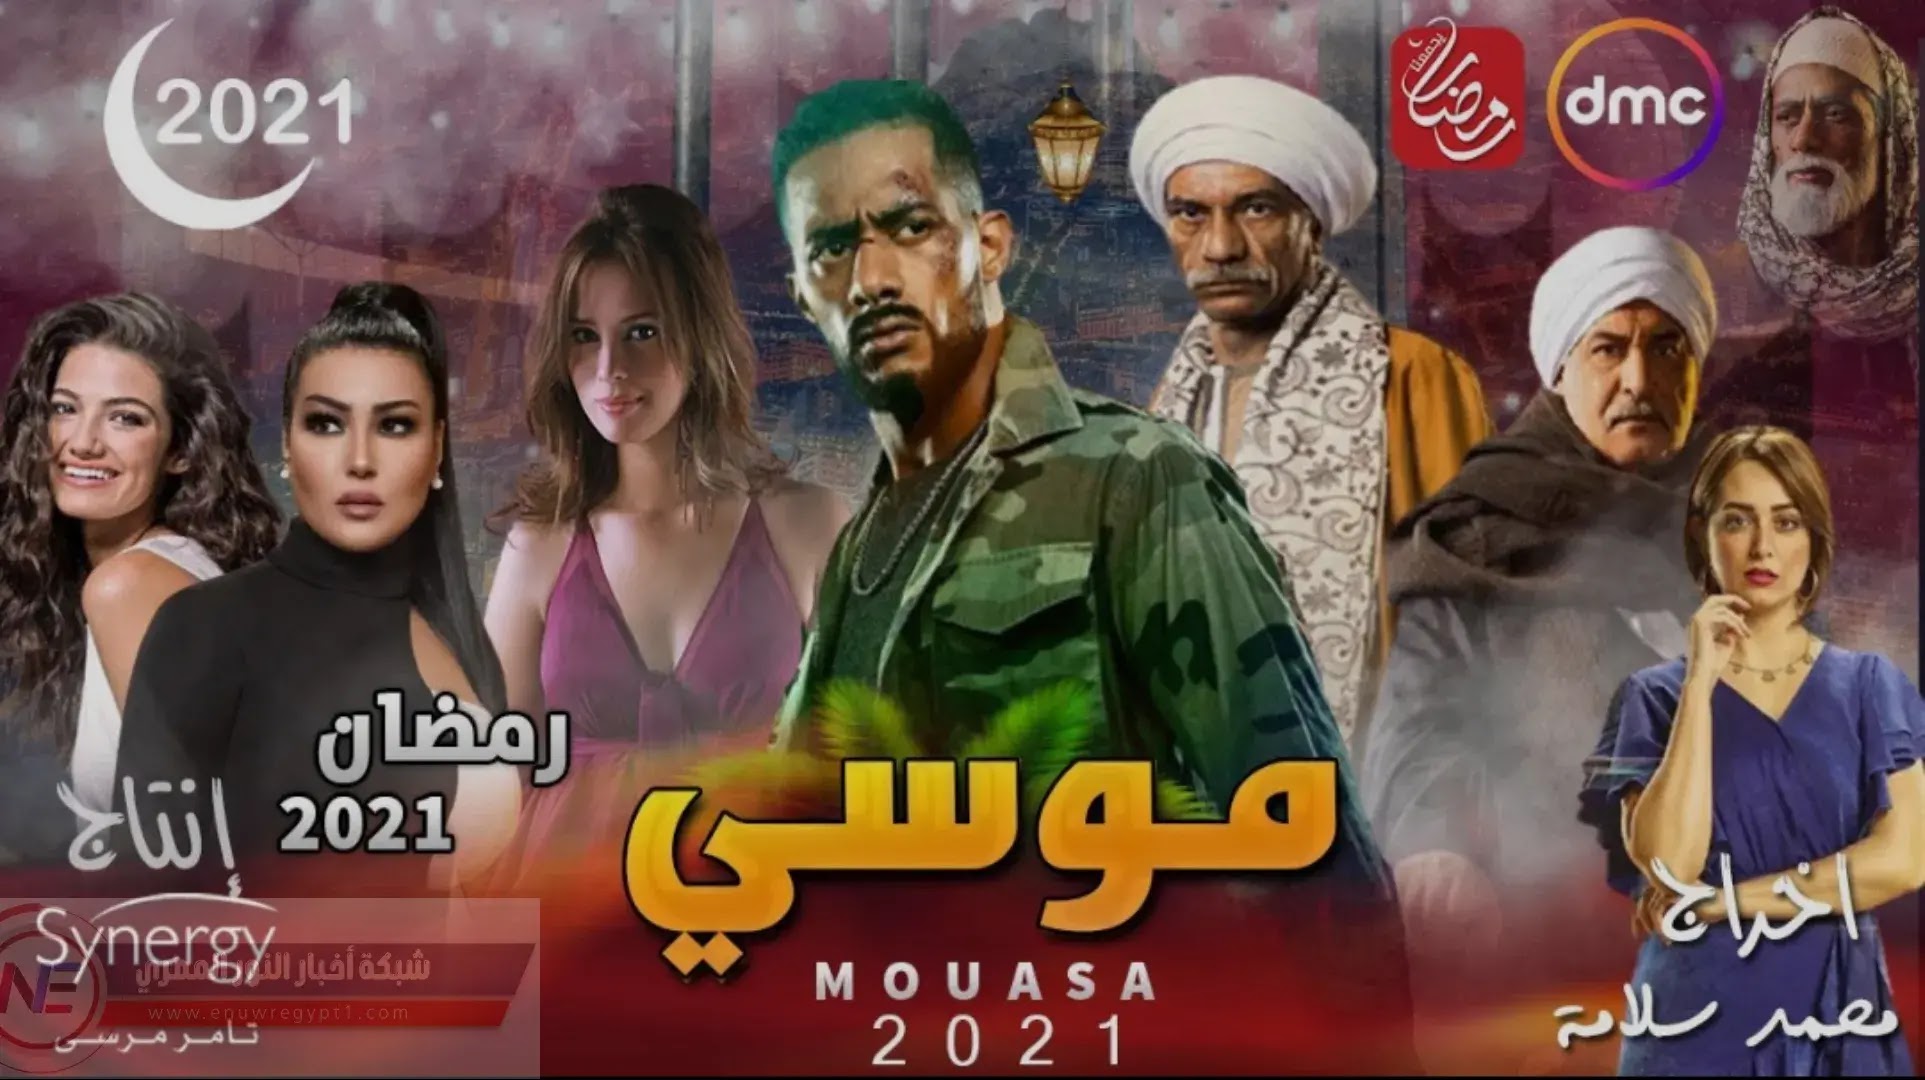 مواعيد عرض مسلسل موسي للفنان محمد رمضان | القنوات الناقلة لمسلسل موسي رمضان 2021